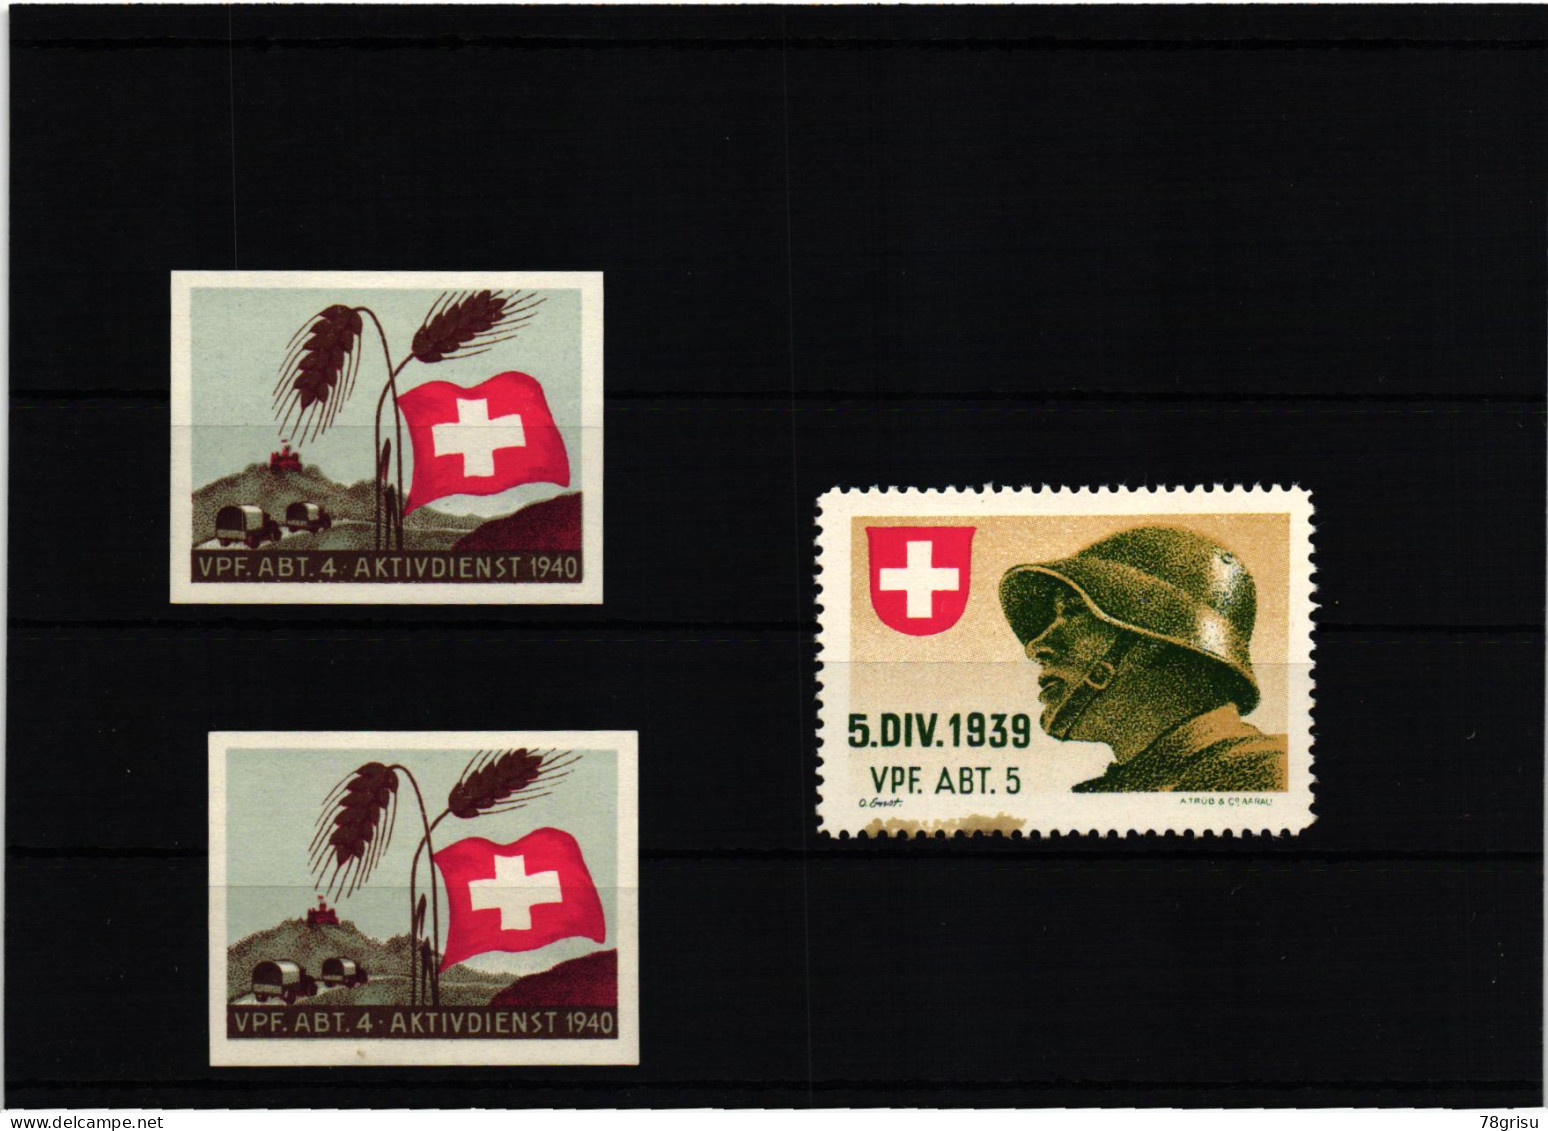 Schweiz Soldatenmarken, Vpf.Abt. Verpflegungs Abteilung Kohldampf 1939 1940 - Labels